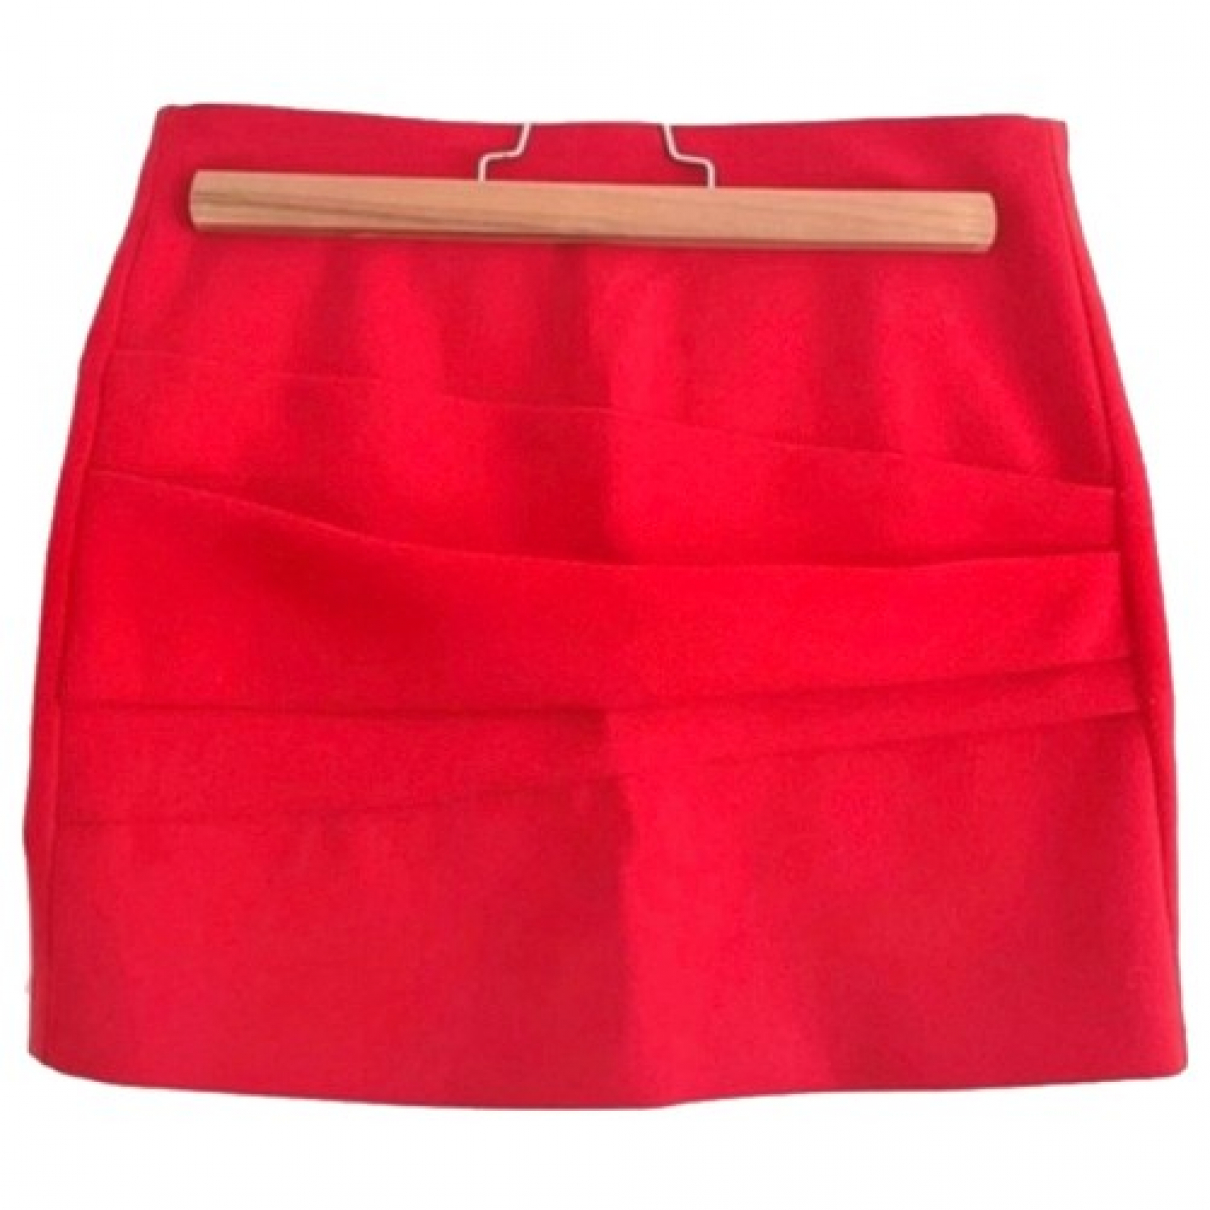 Mini skirt SALENEW Max 78% OFF very popular